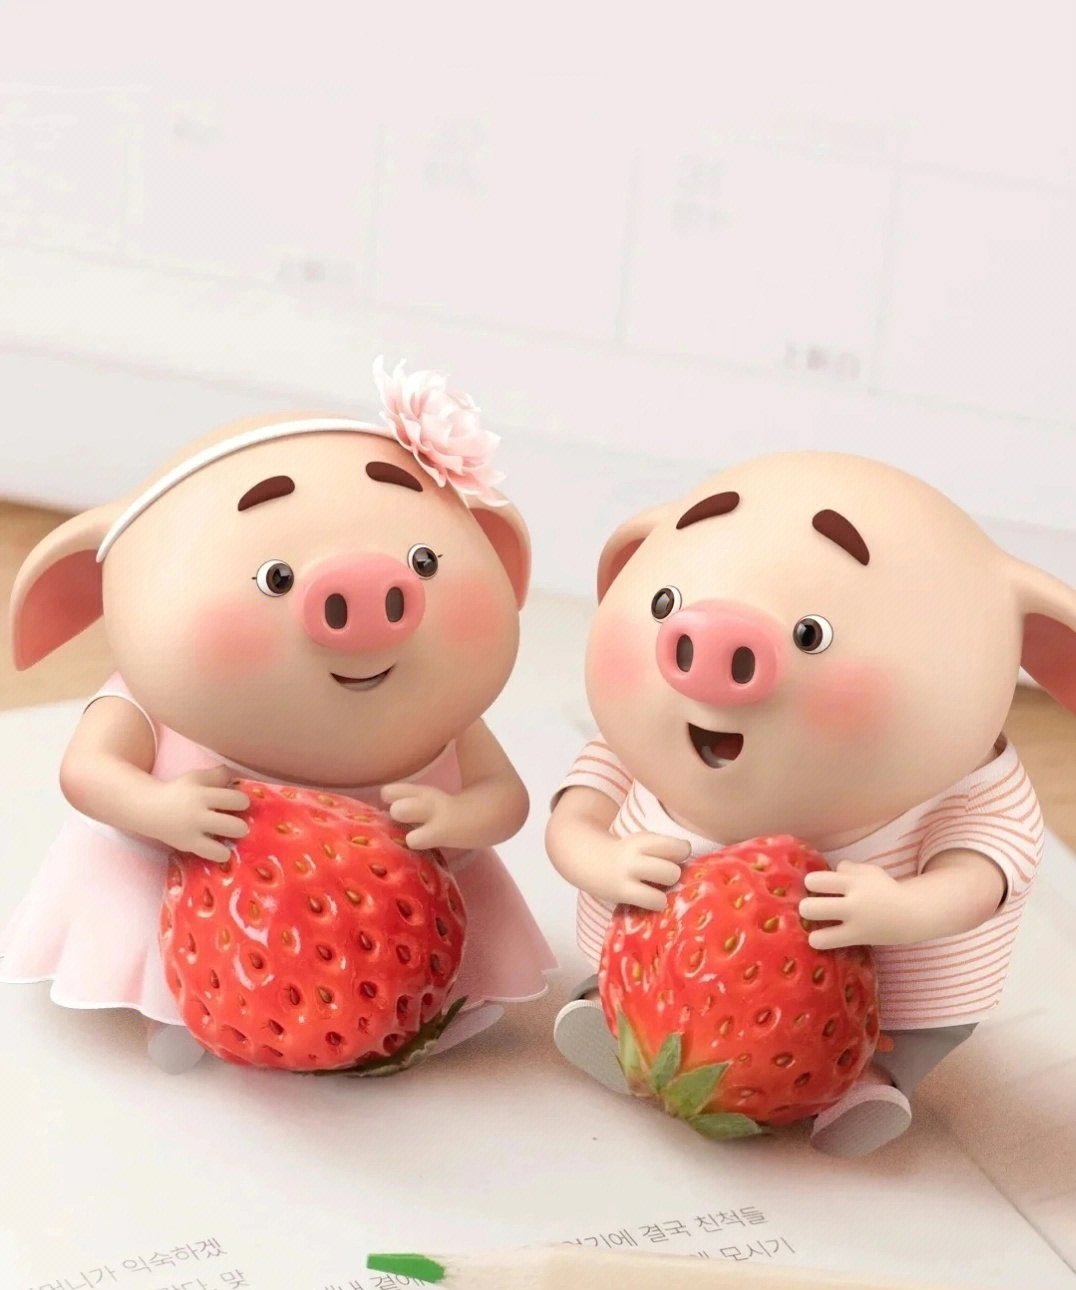 甜蜜猪猪图片 祥瑞图片